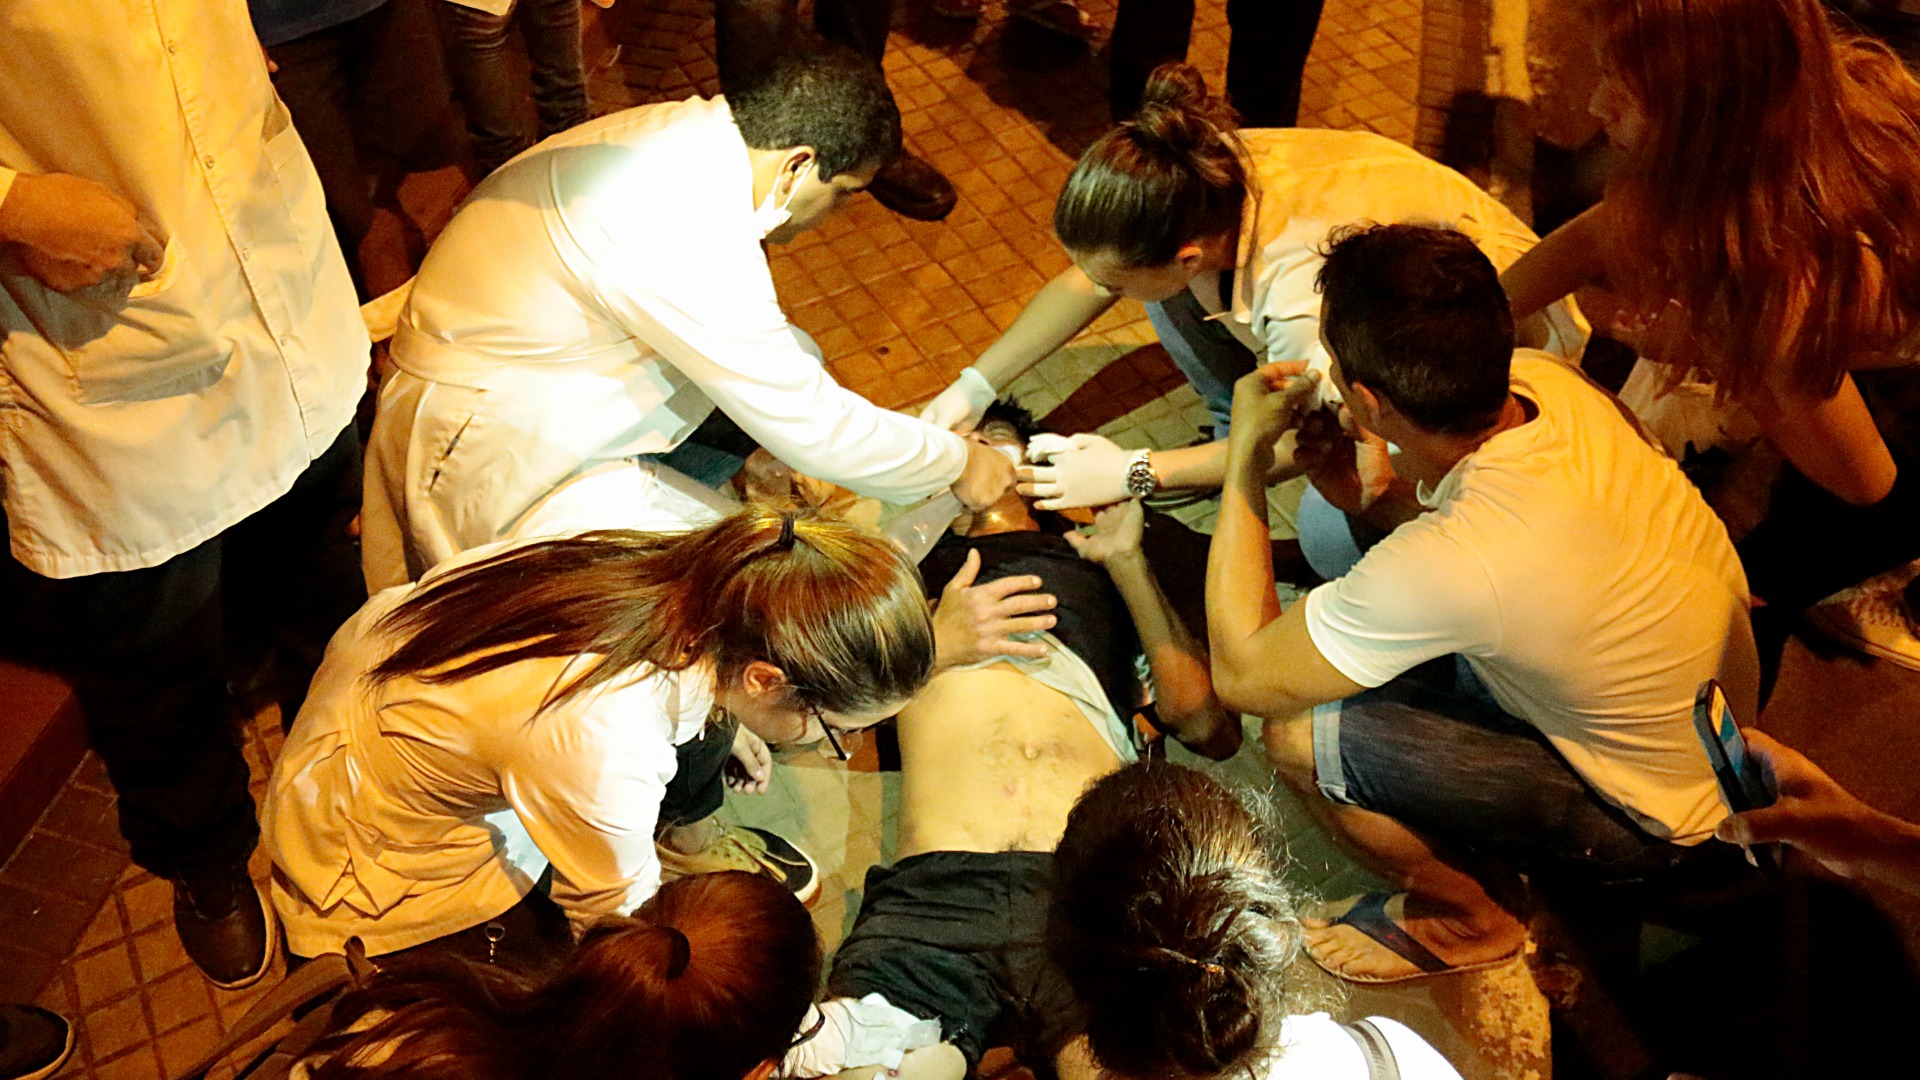 Un muerto en la sede del partido opositor durante disturbios en Asunción